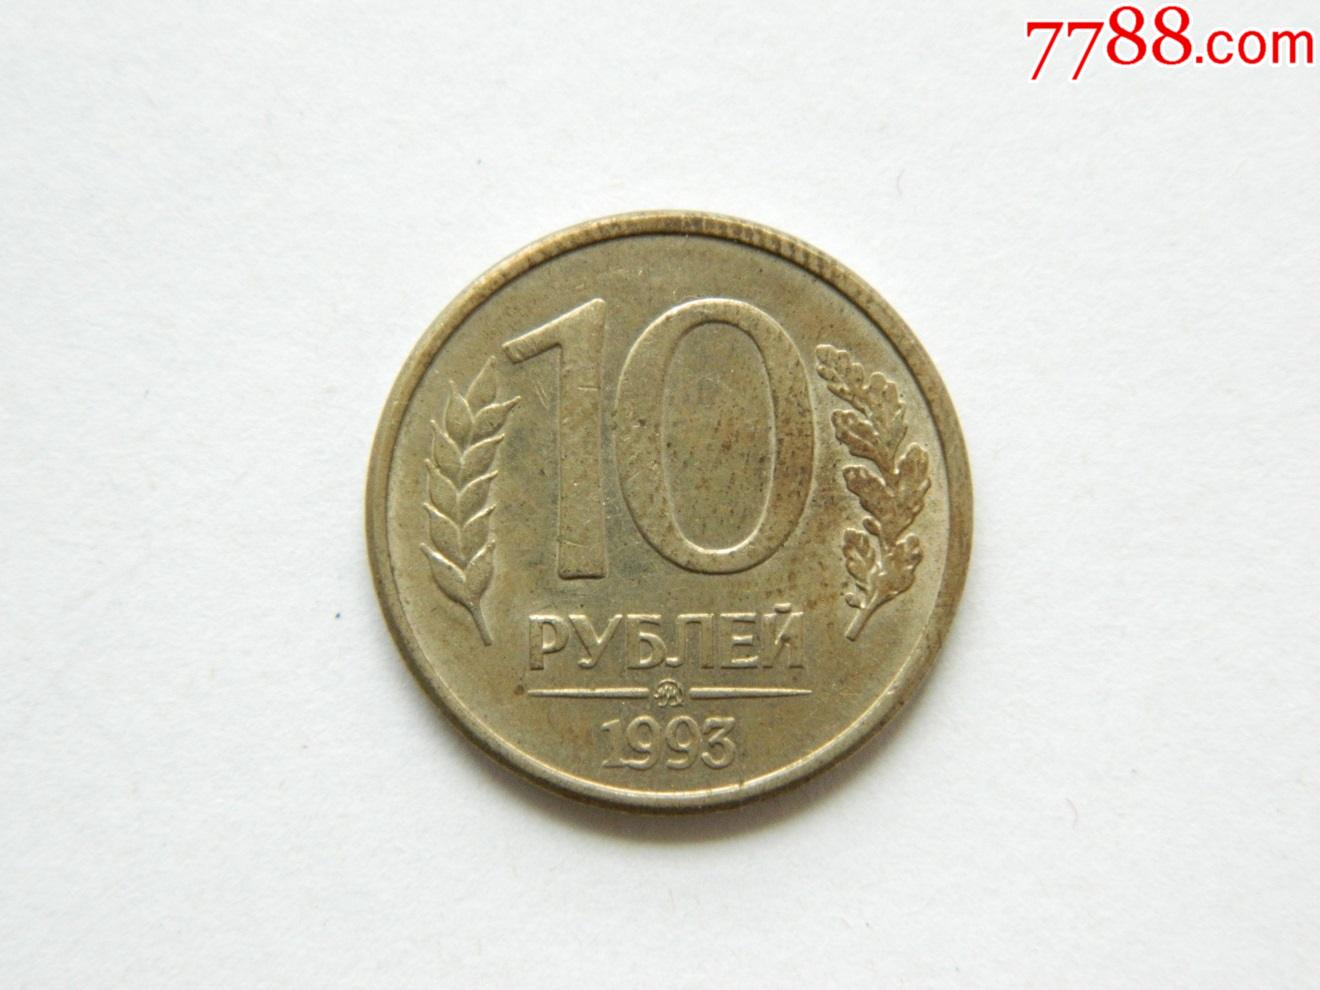 俄罗斯10卢布硬币